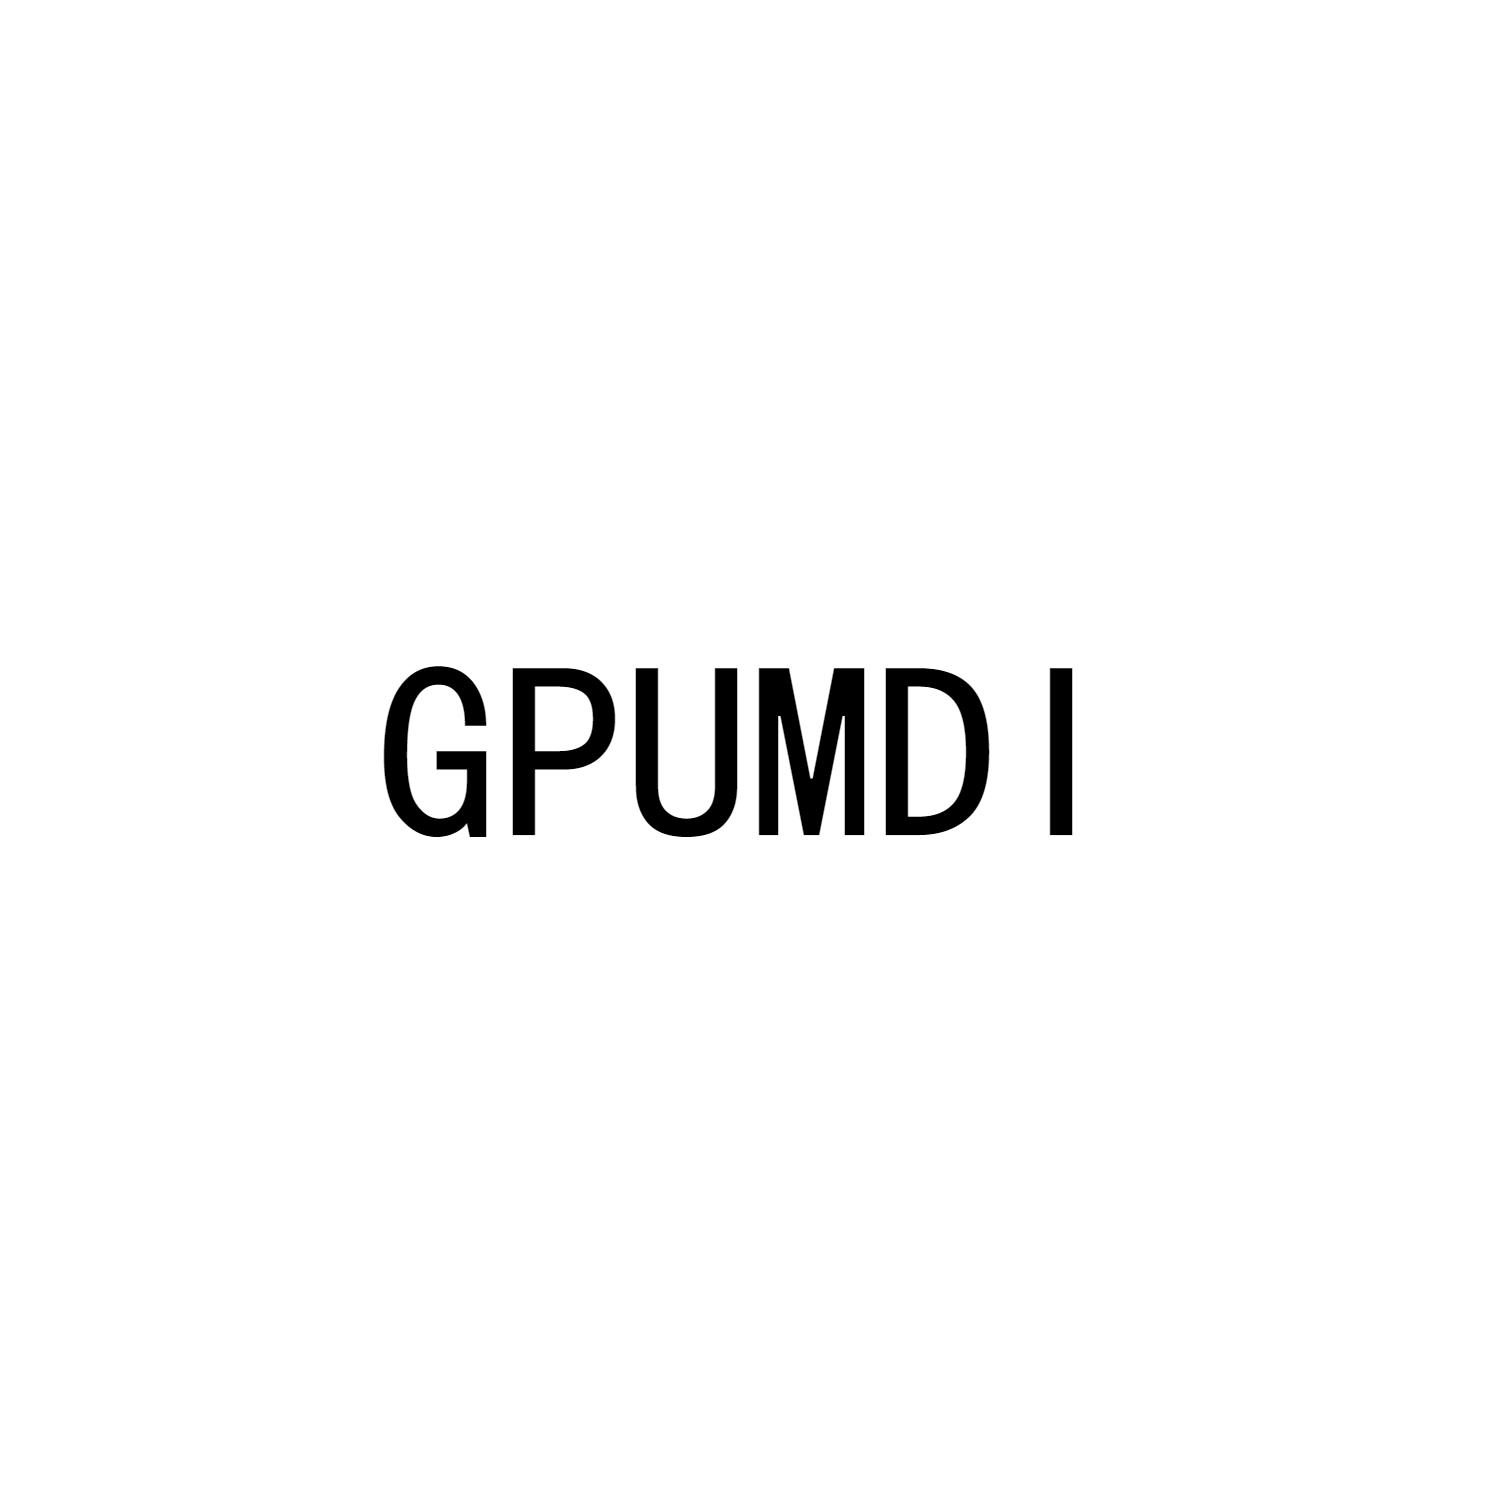 GPUMDI